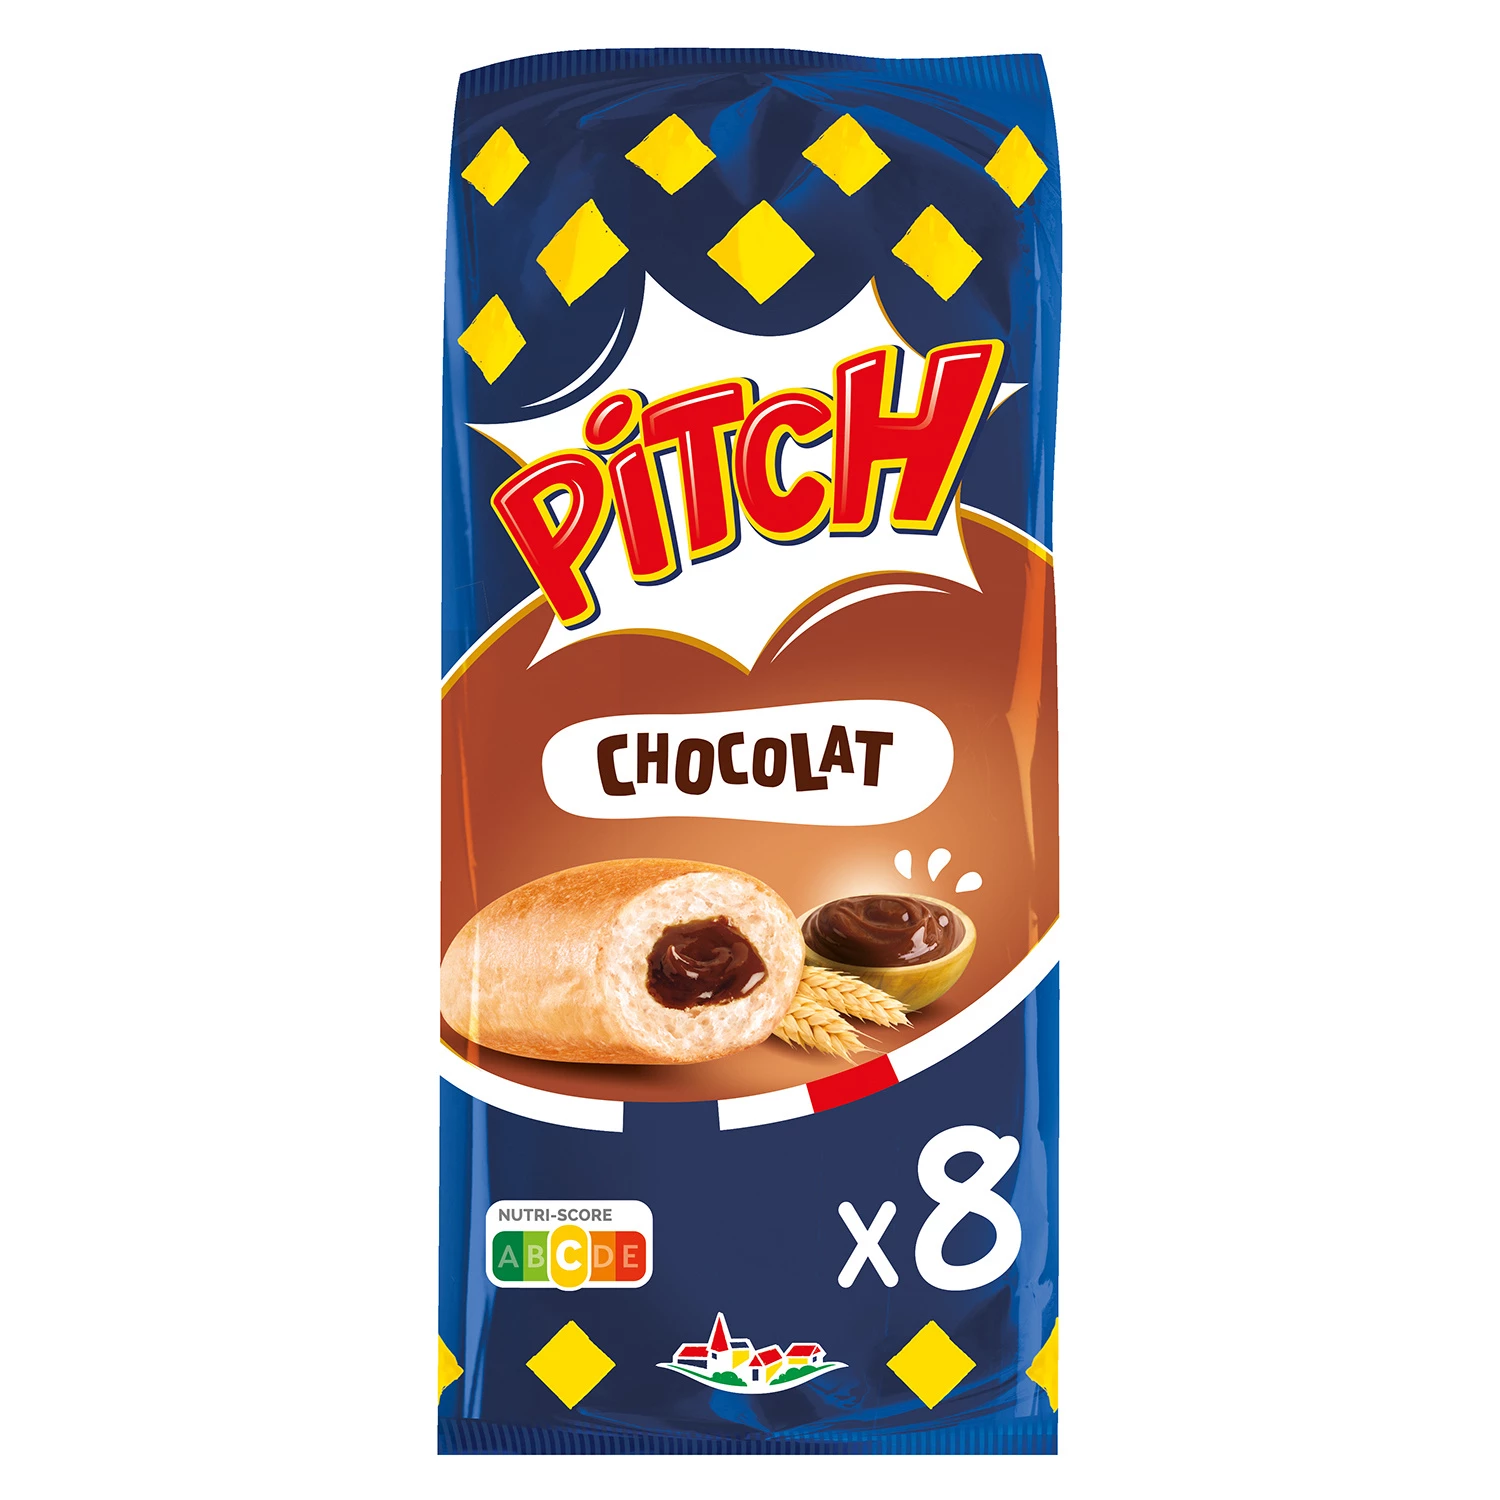 Chocolate Pitch Brioche x8 300g - PASQUIER